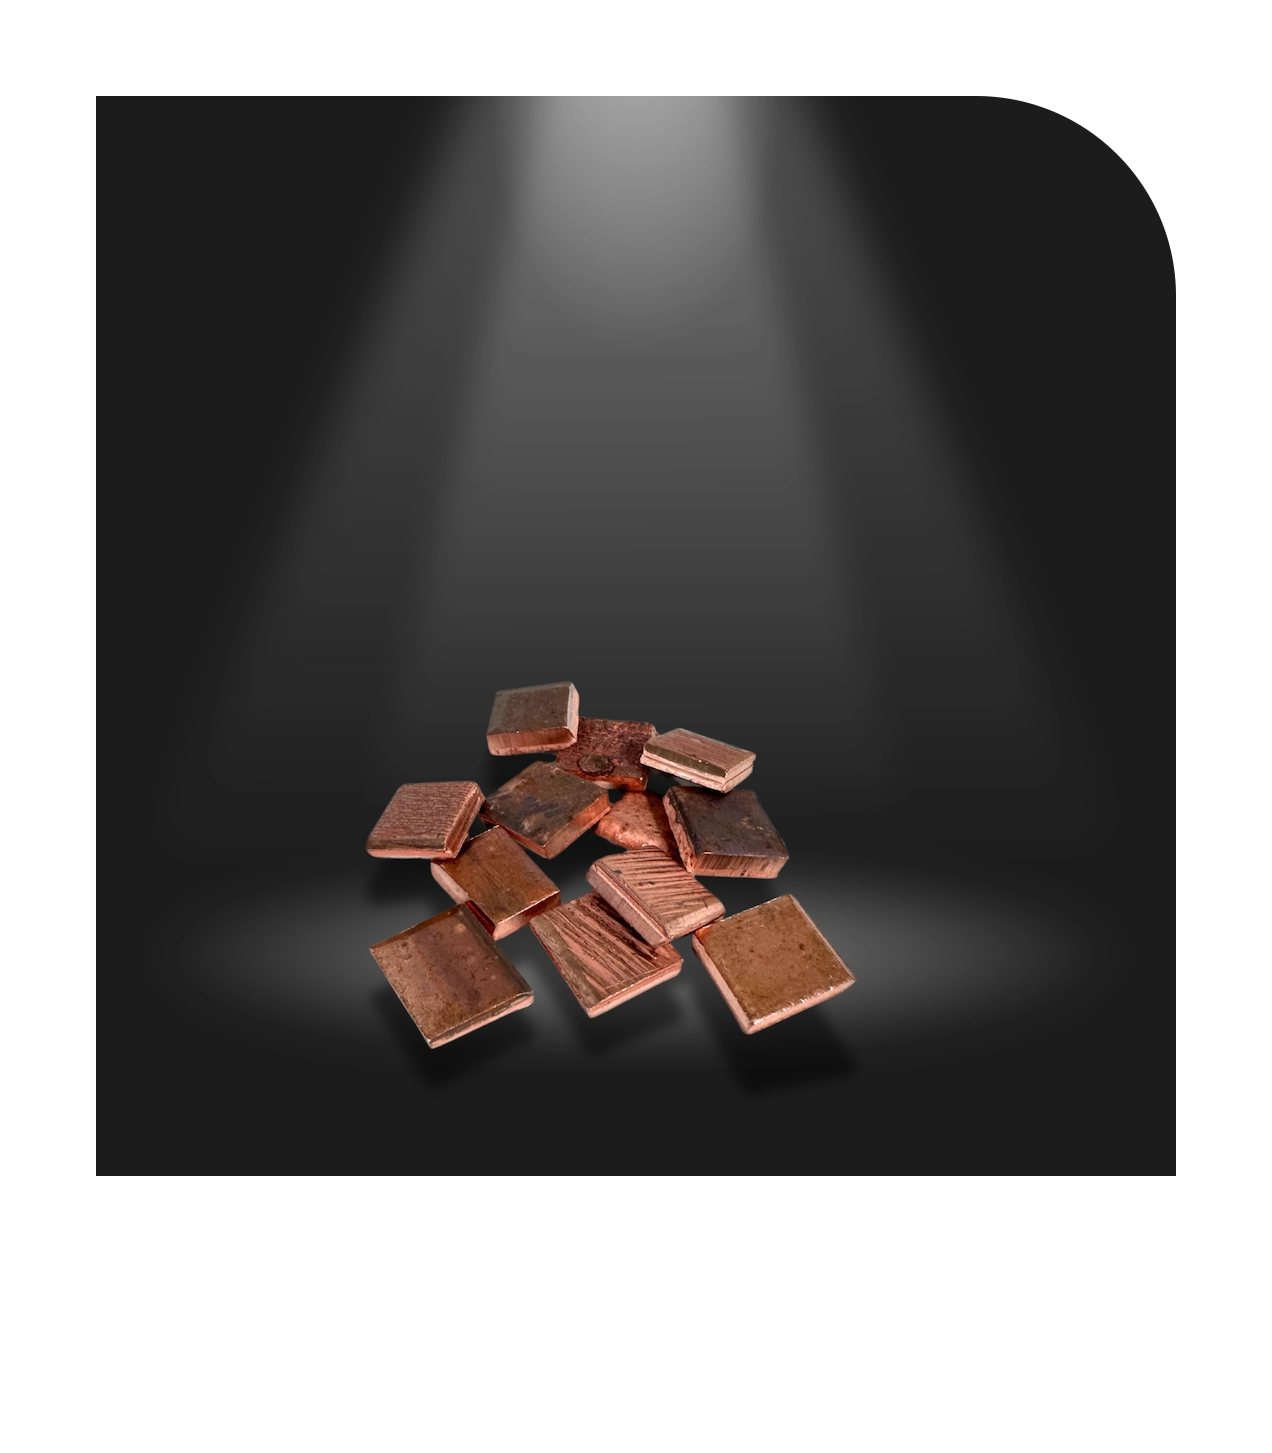 Kupfer Squares 2x2 (EL) sind Kupferanoden mit mindestens 99,99% Reinheit, geeignet für cyanidbasierte Kupferbäder, sorgen für bessere Abscheidung und Verteilung in Anodenkörben durch größere Oberfläche als Kupferkathoden.